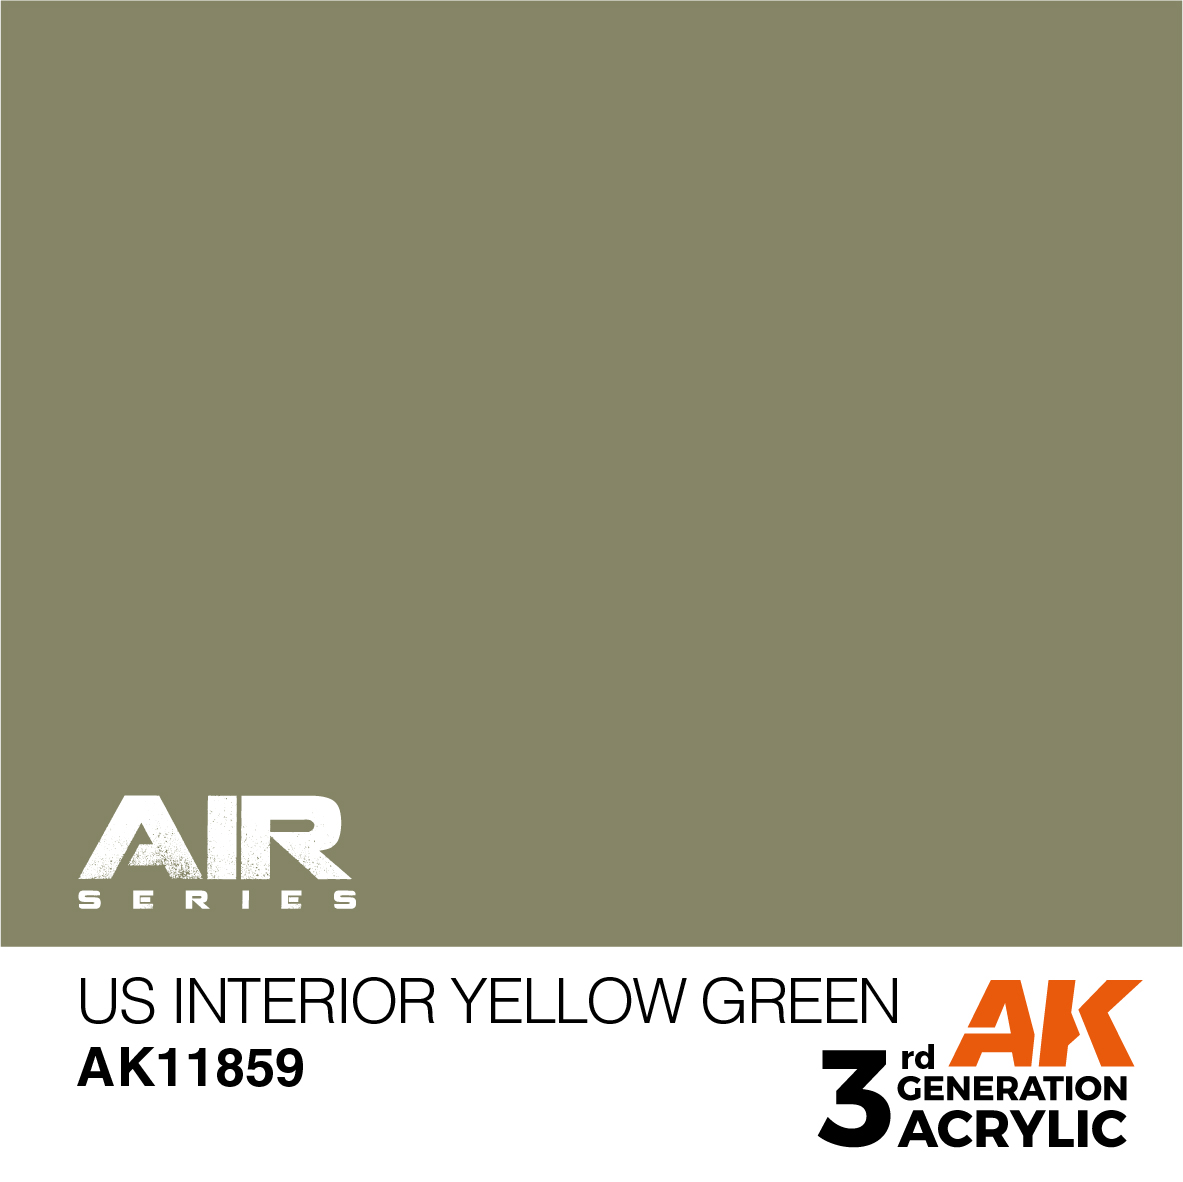 US Interior Yellow Green – AIR